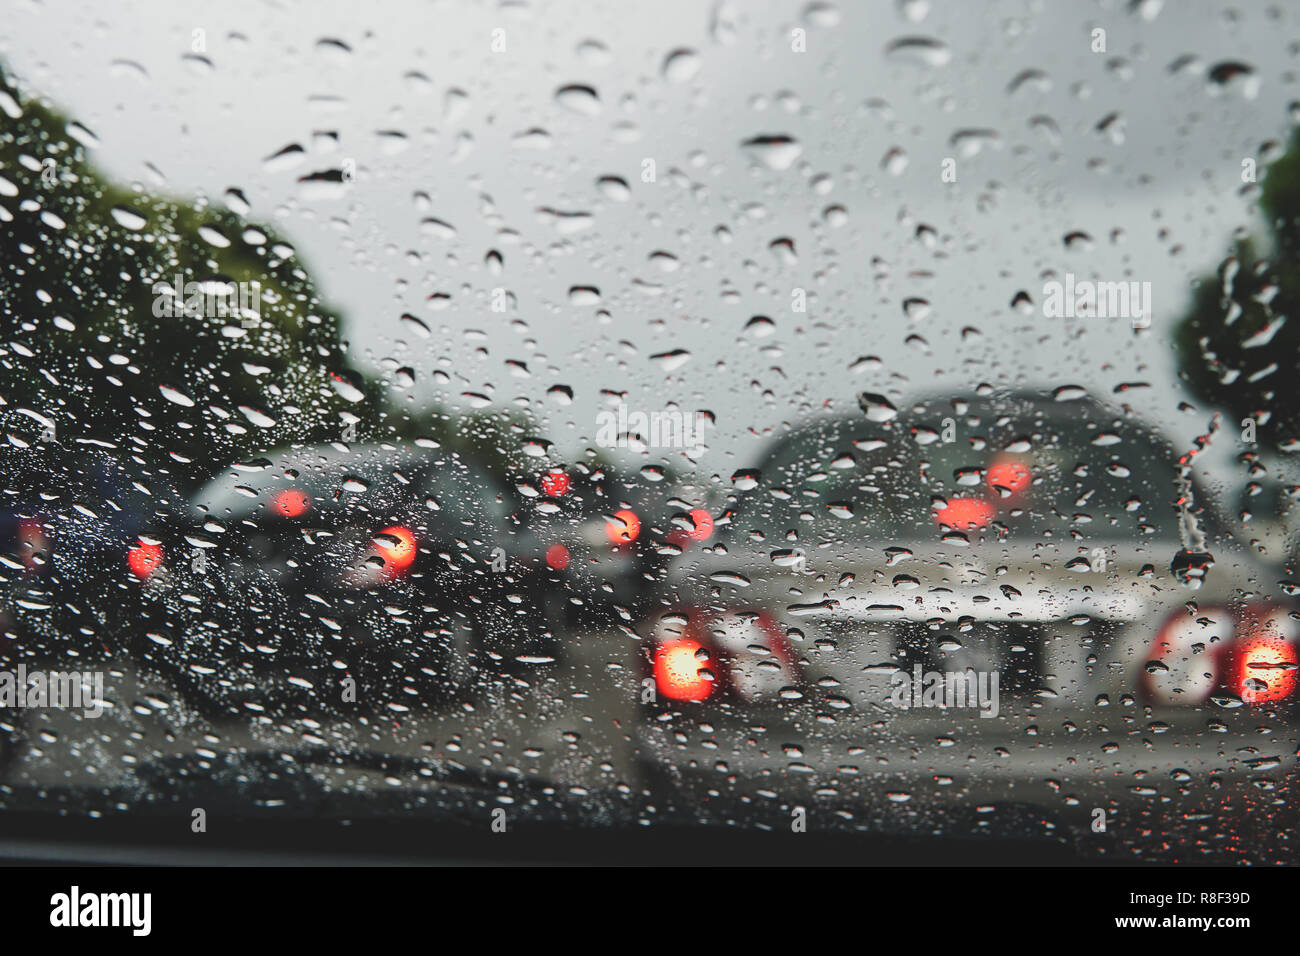 Regentropfen Auf Einem Seitenspiegel Und Autofenster Bei Starkem Regen  Stockbild - Bild von fahrzeug, bewegung: 254628947